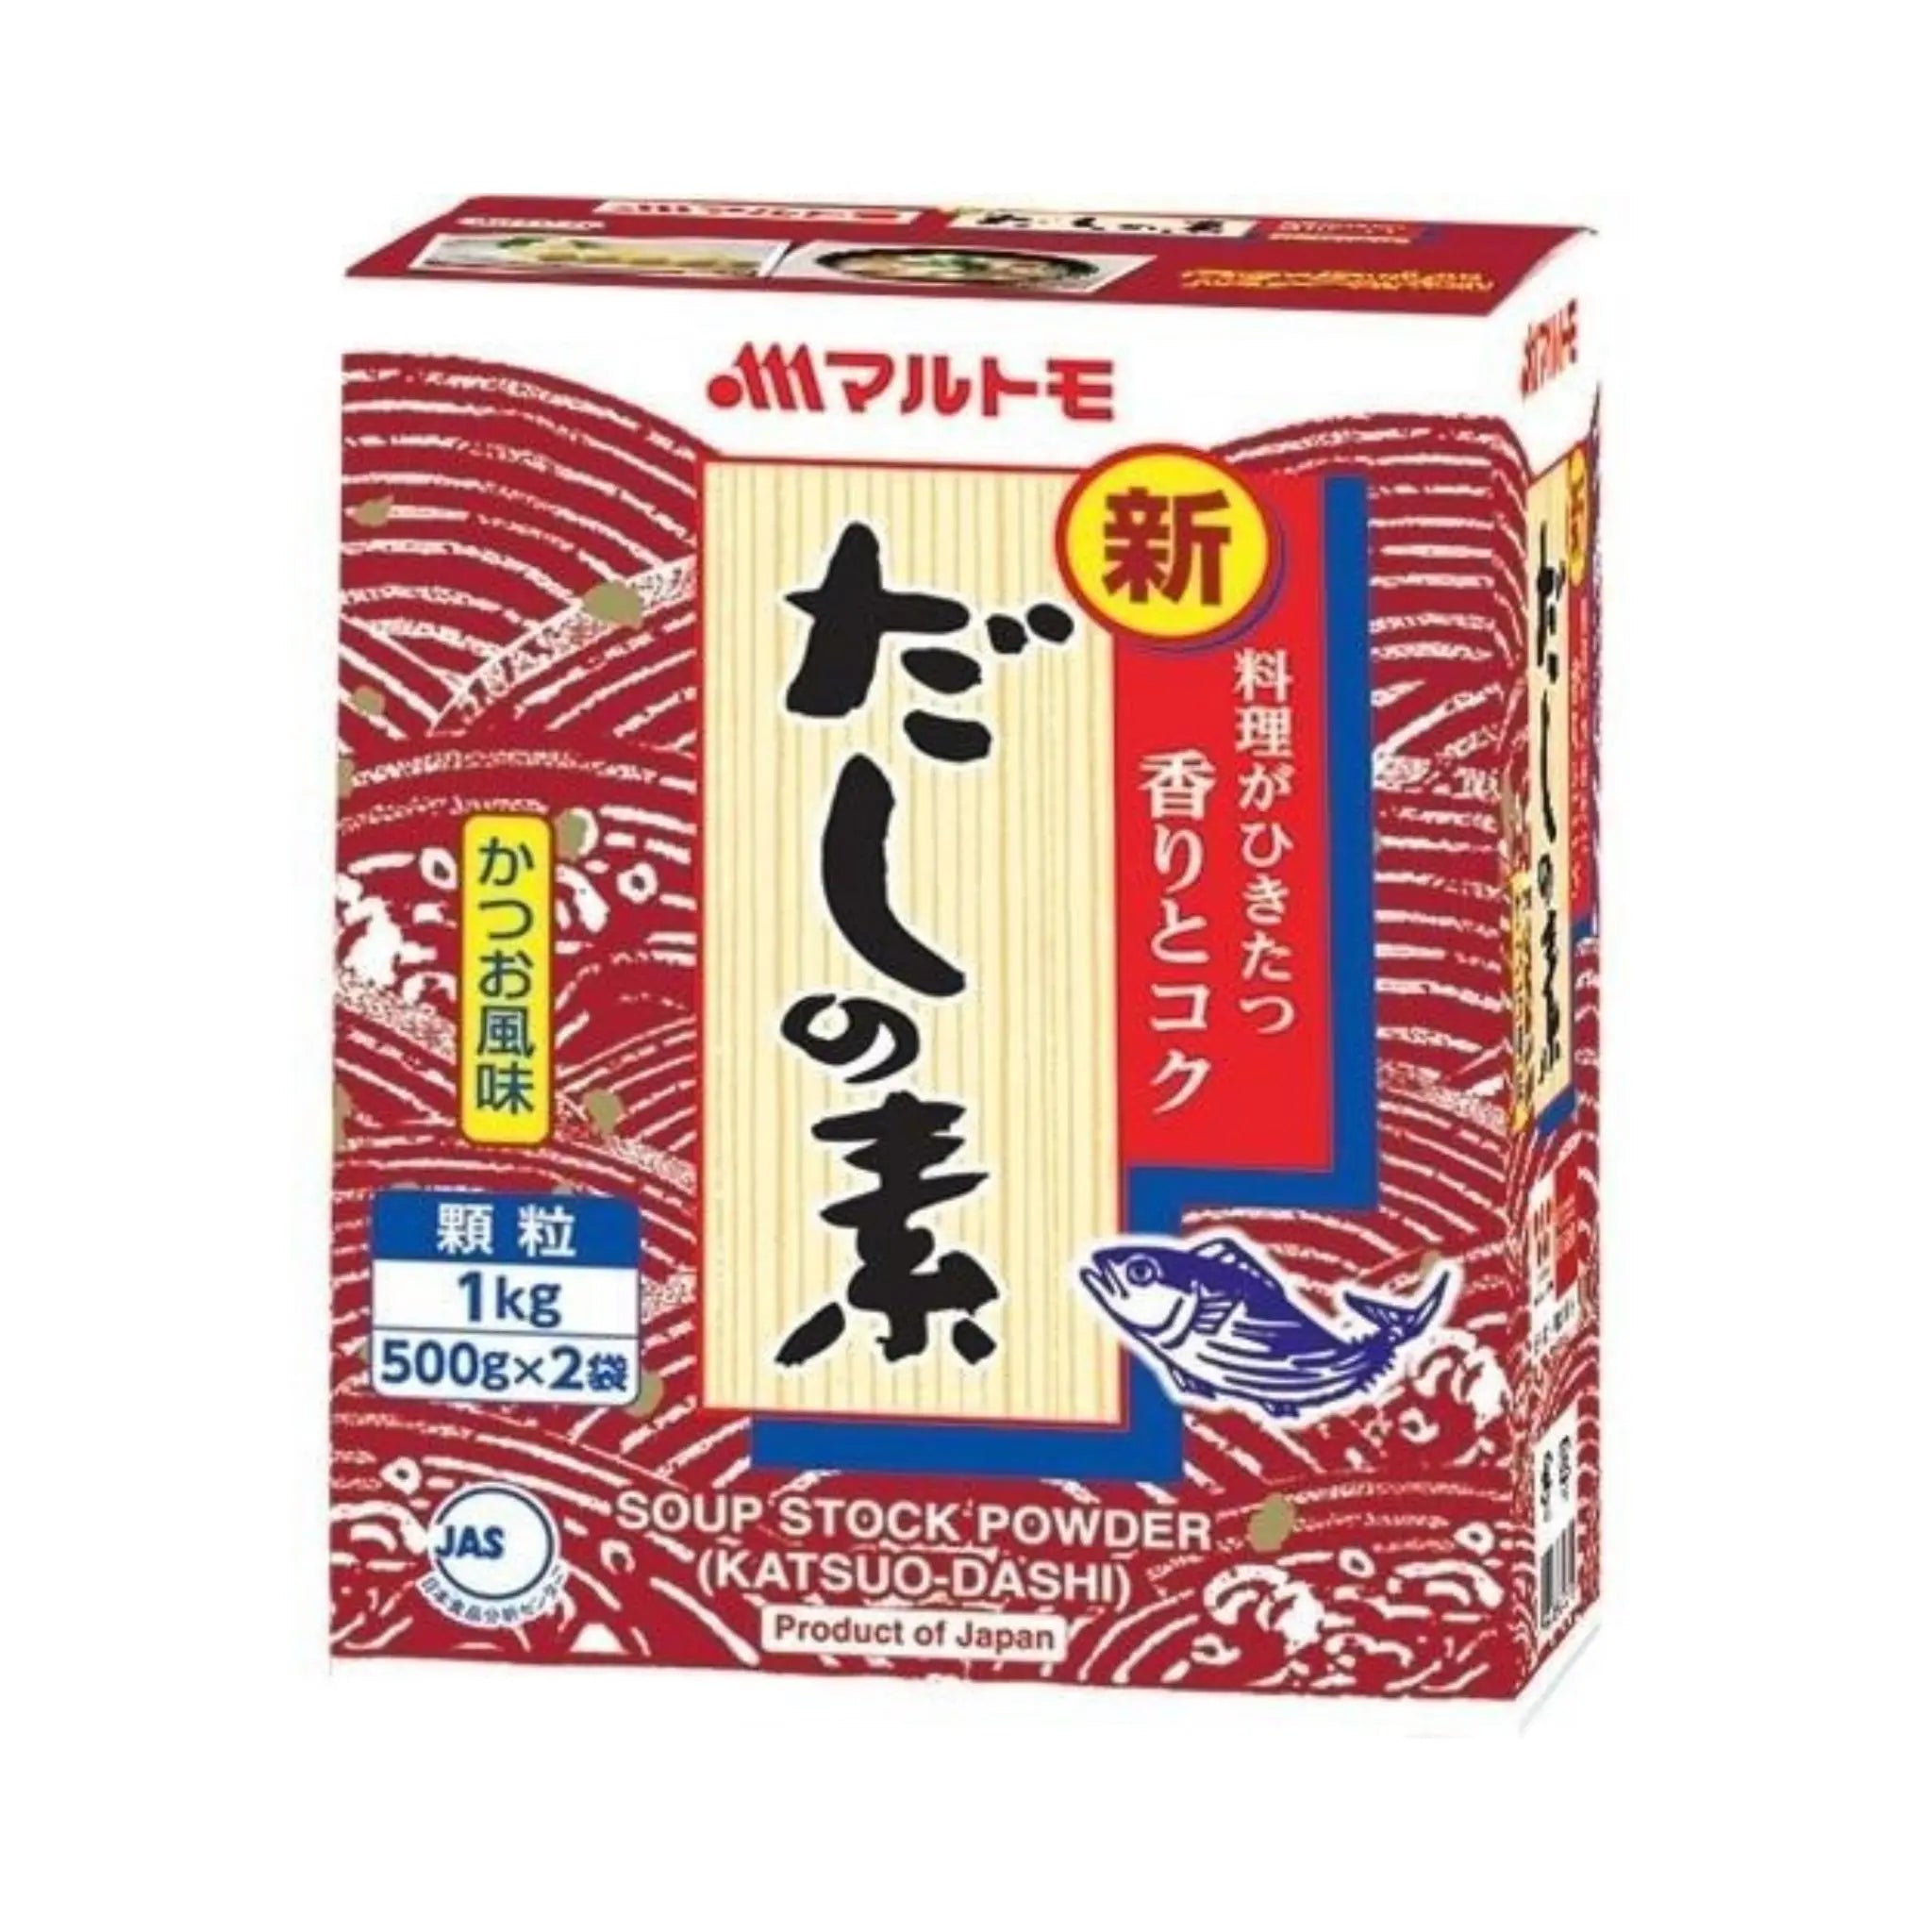 Marutomo Soup Stock Powder Katsuodashi (6X1Kg) Marutomo